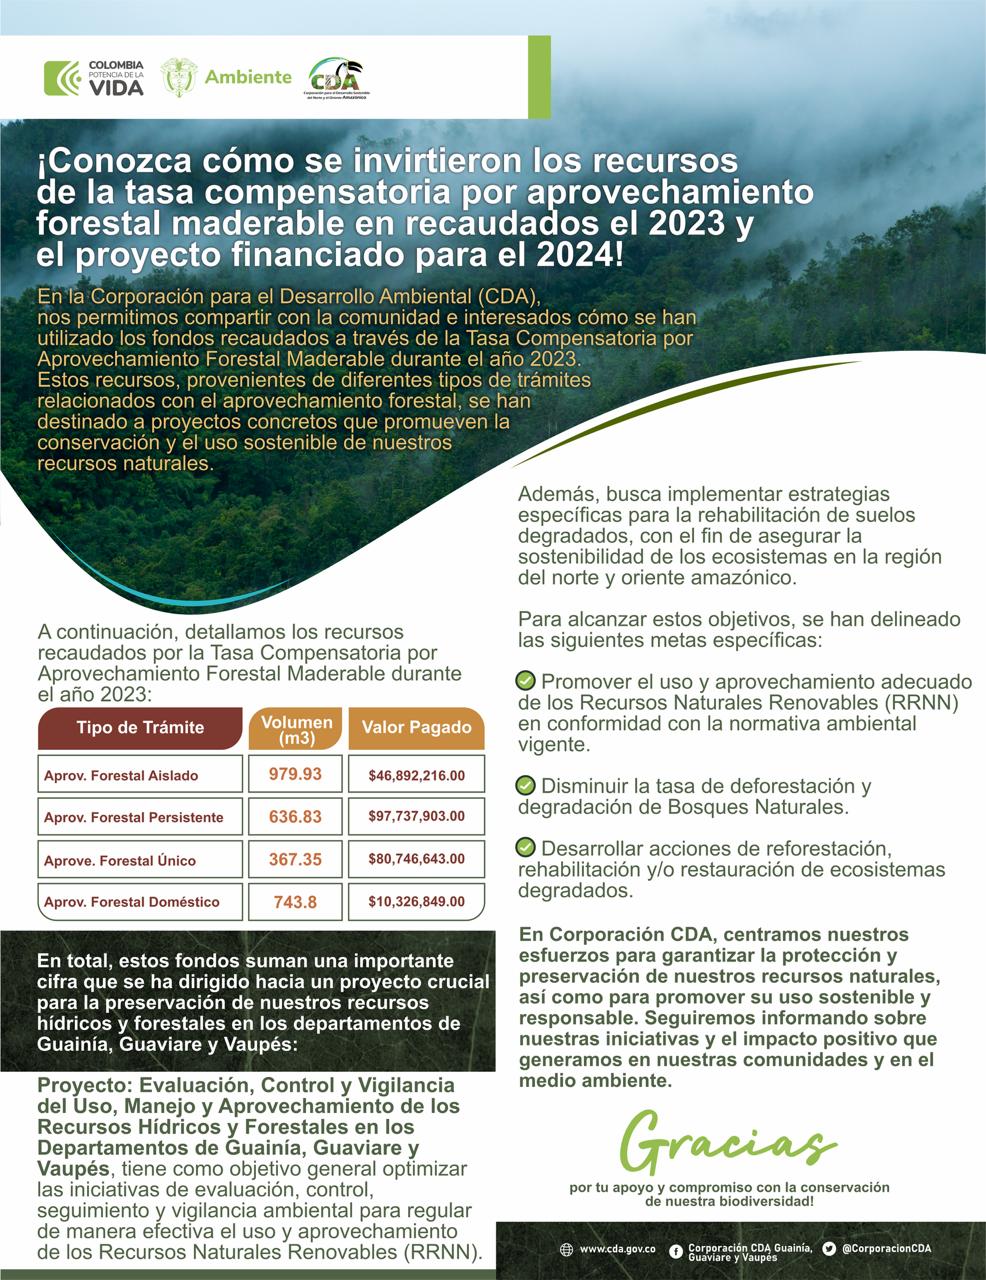 Imagen alusiva a Tasa Compensatoria por Aprovechamiento forestal 2023